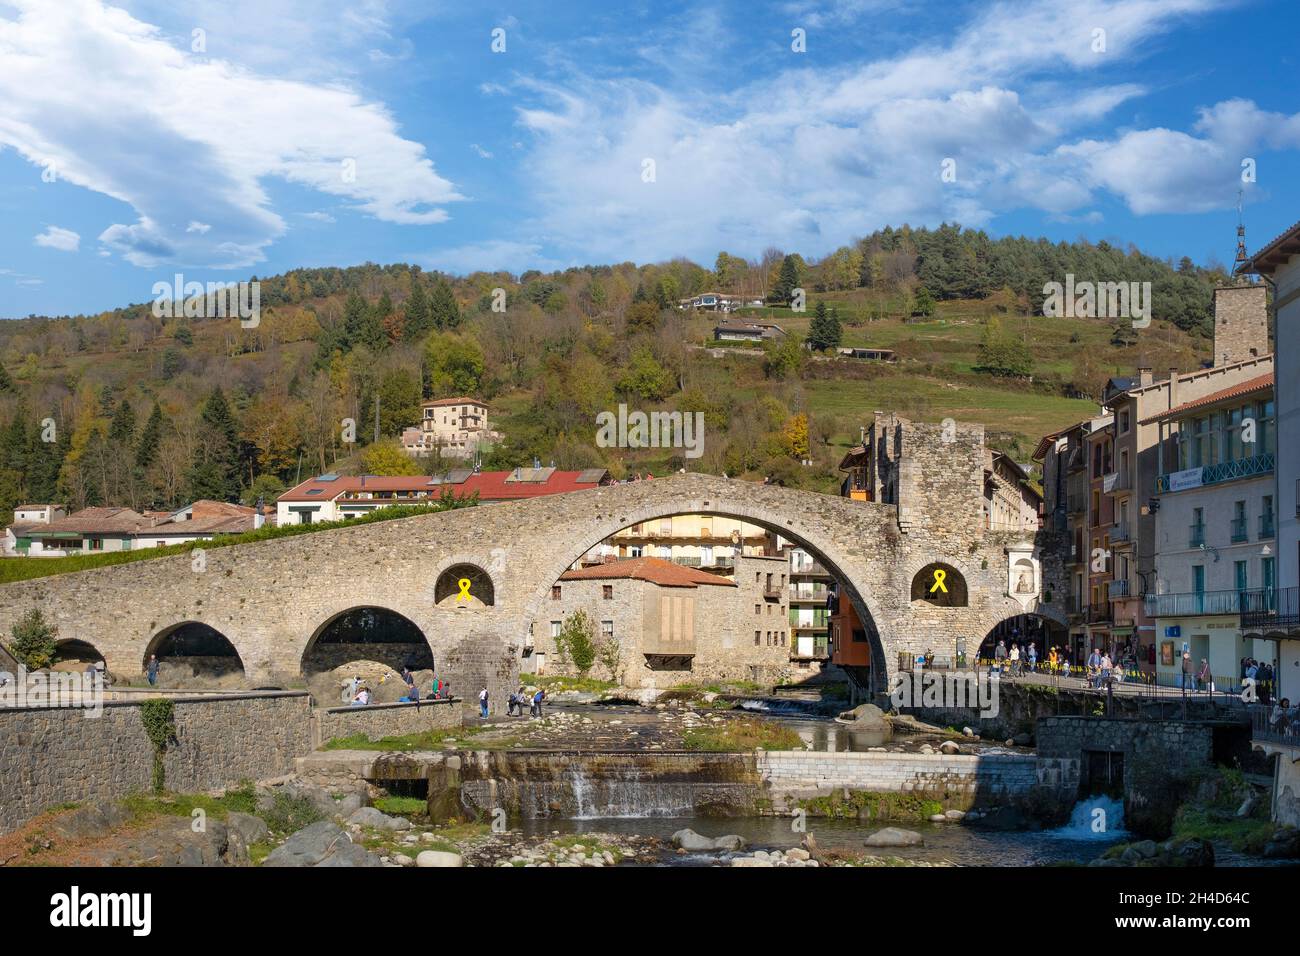 Pont roman en pierre sur la rivière Ter à Camprodon, Catalogne.Espace de copie vide pour le contenu de l'éditeur Banque D'Images